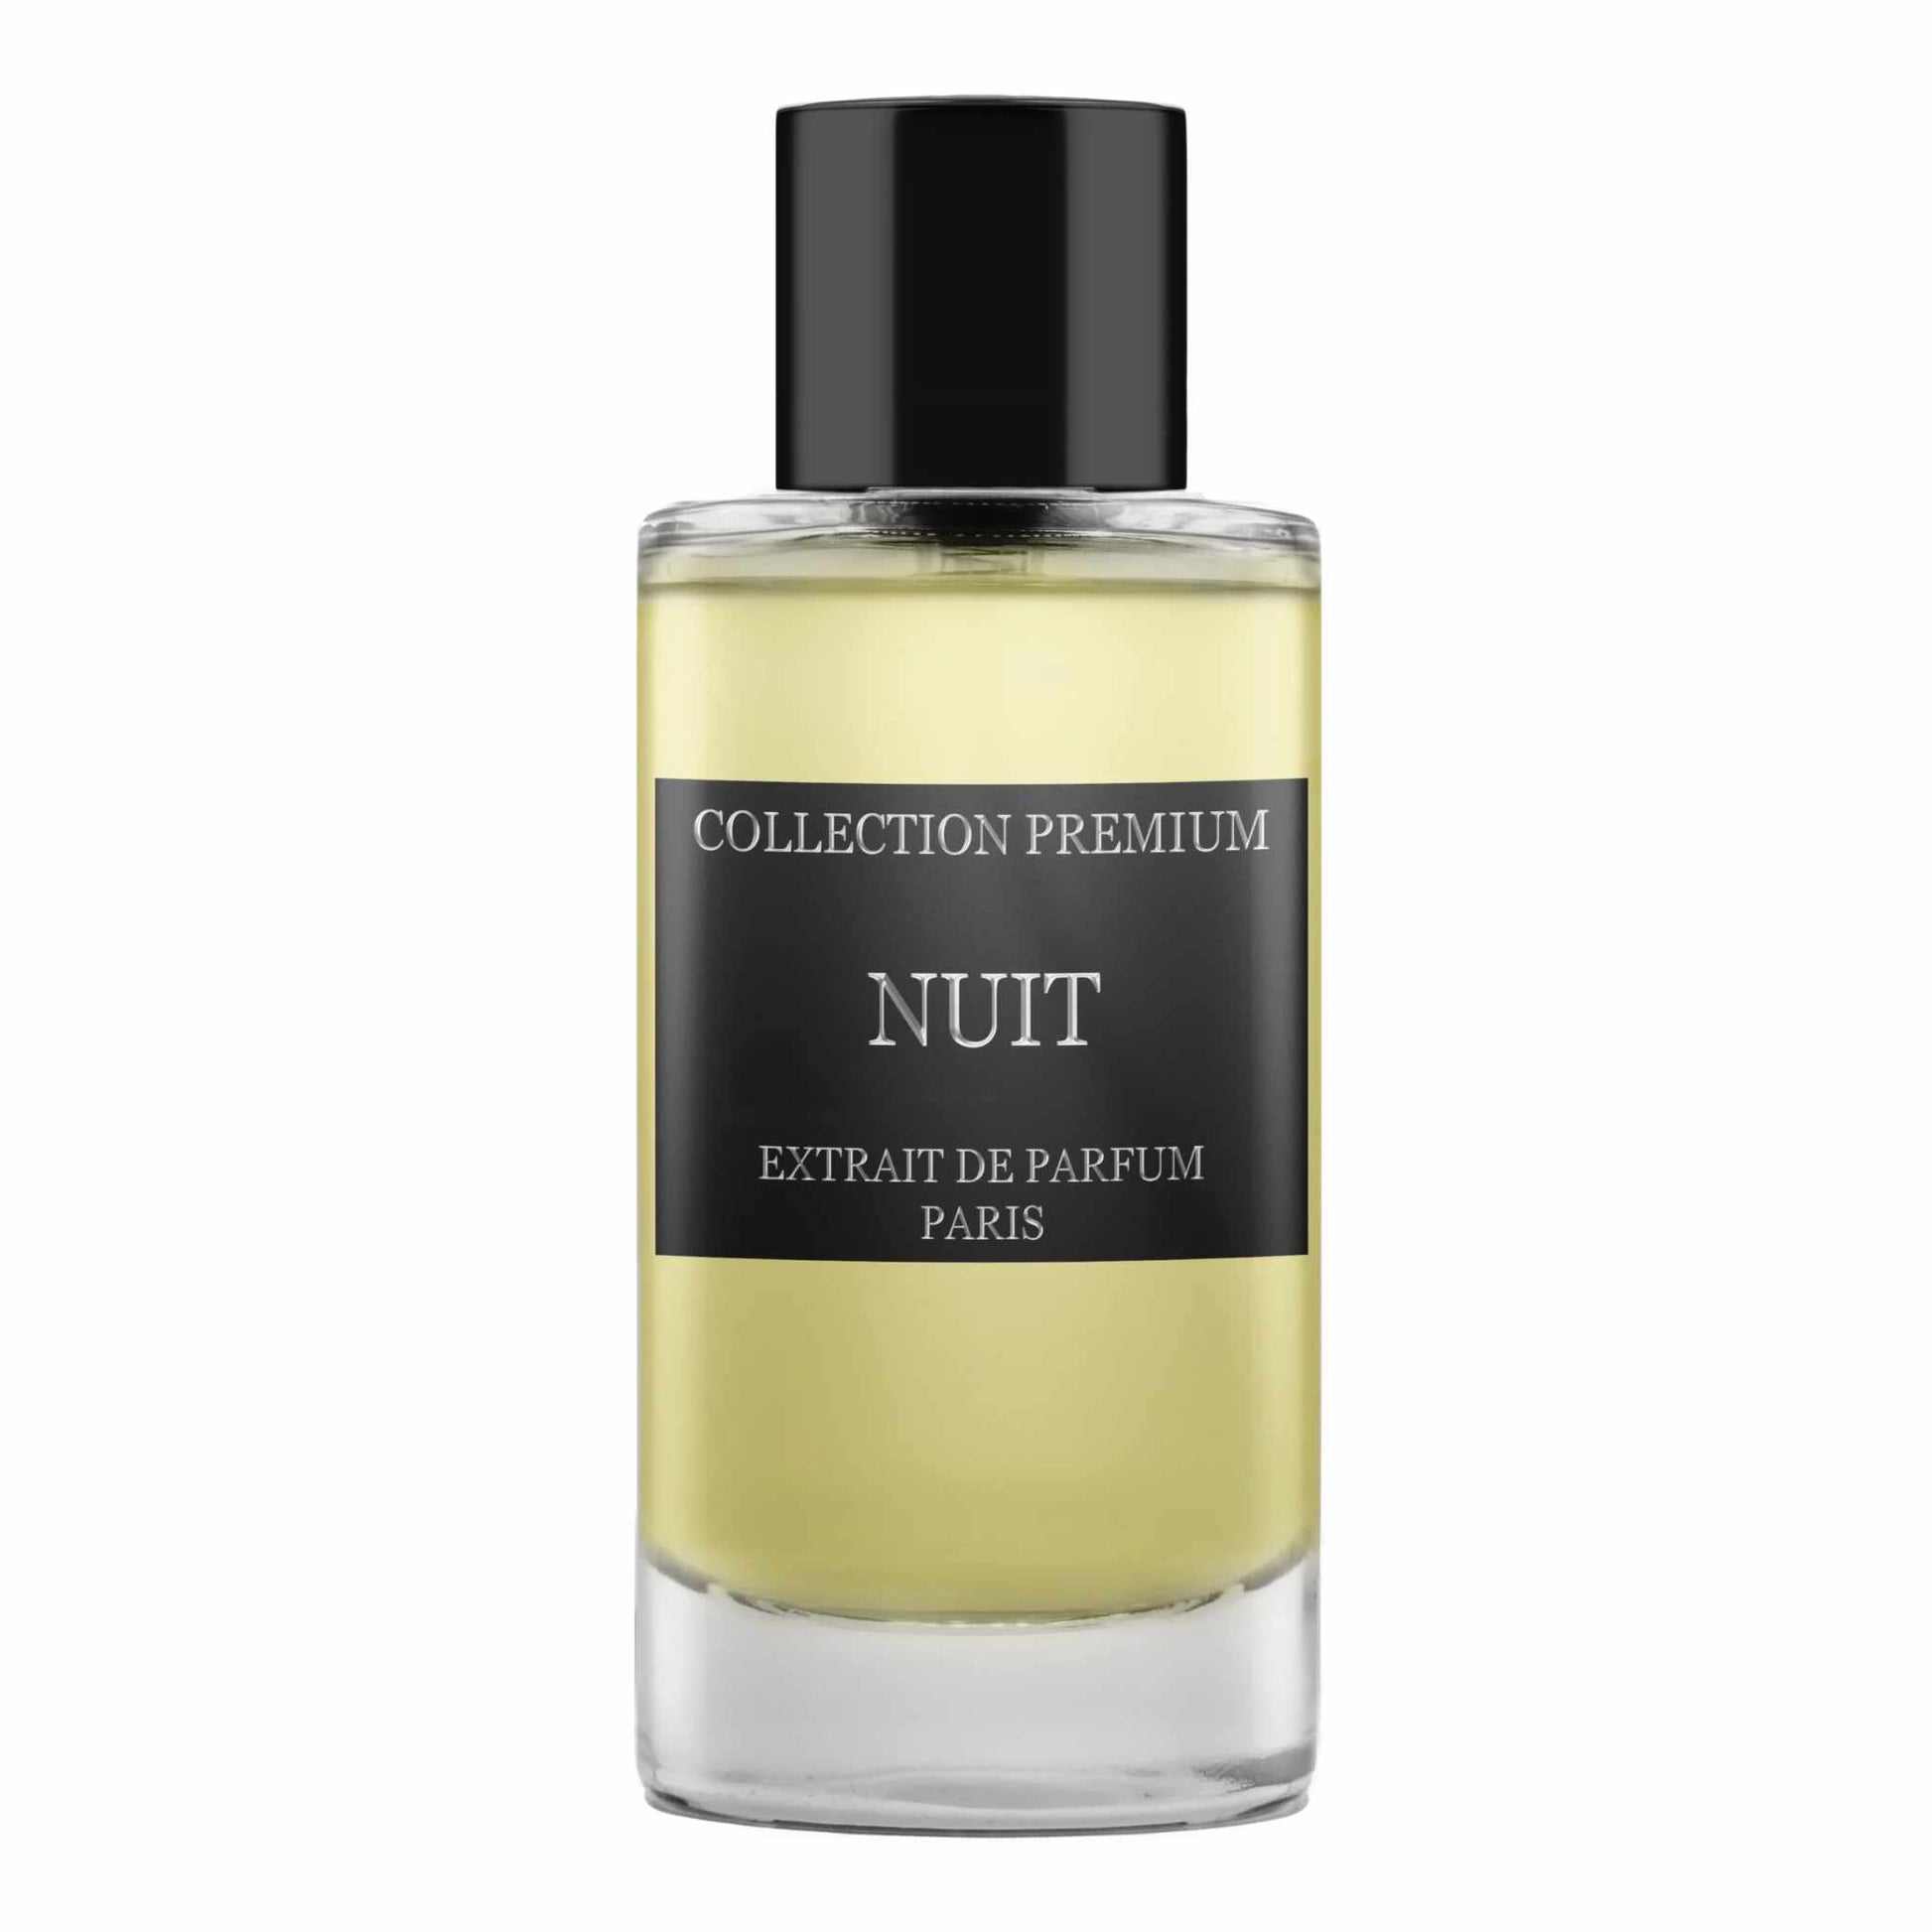 Collection Premium Nuit Extrait de Parfum 50 ml